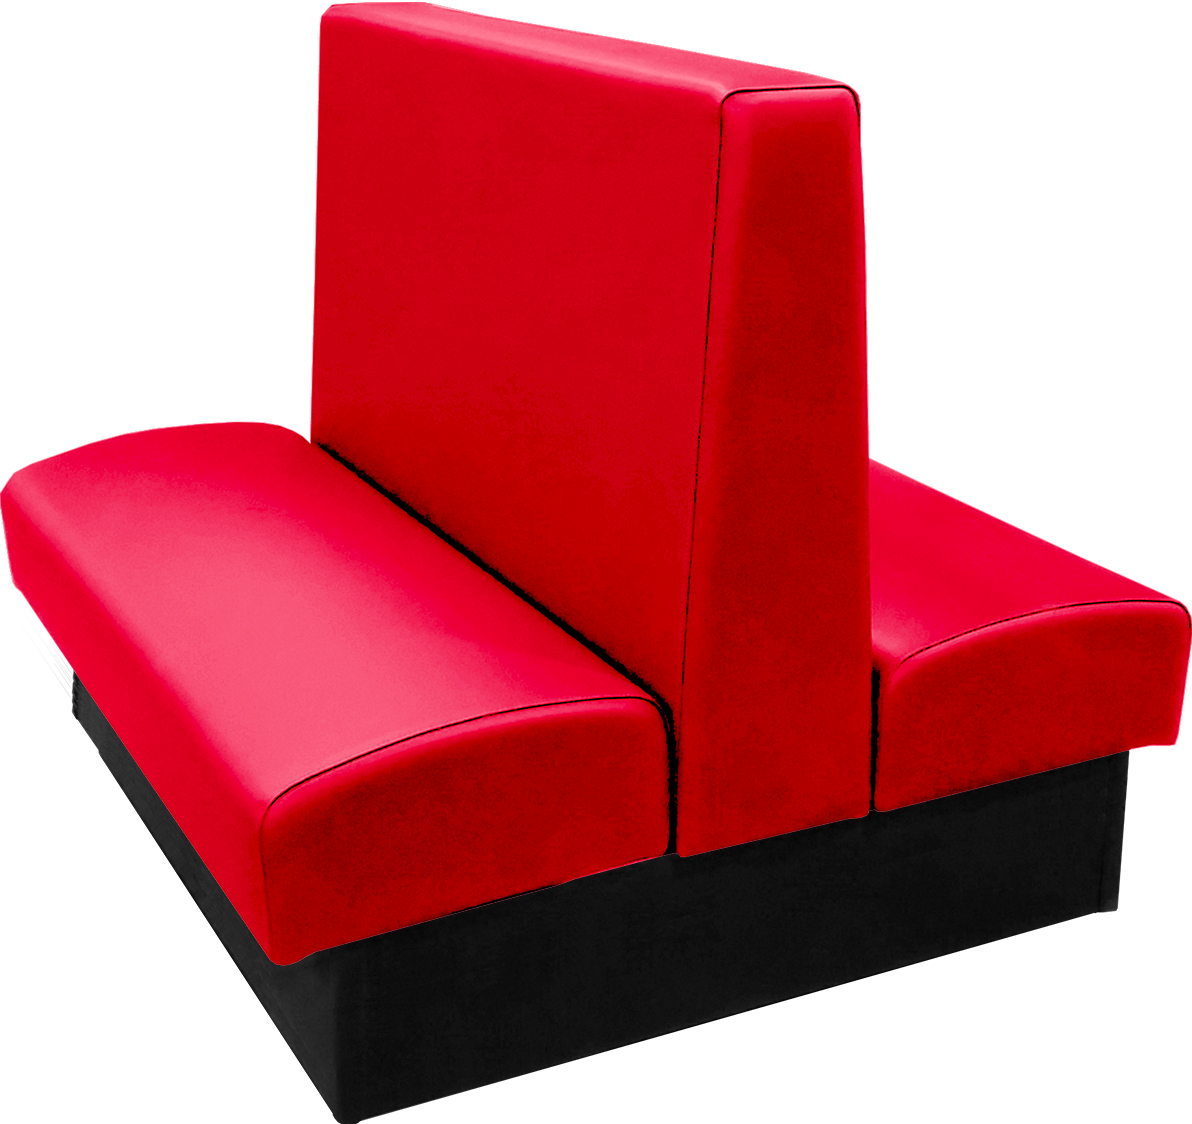 Ambrose vinyl-upholstered double restaurant booth red vinyl